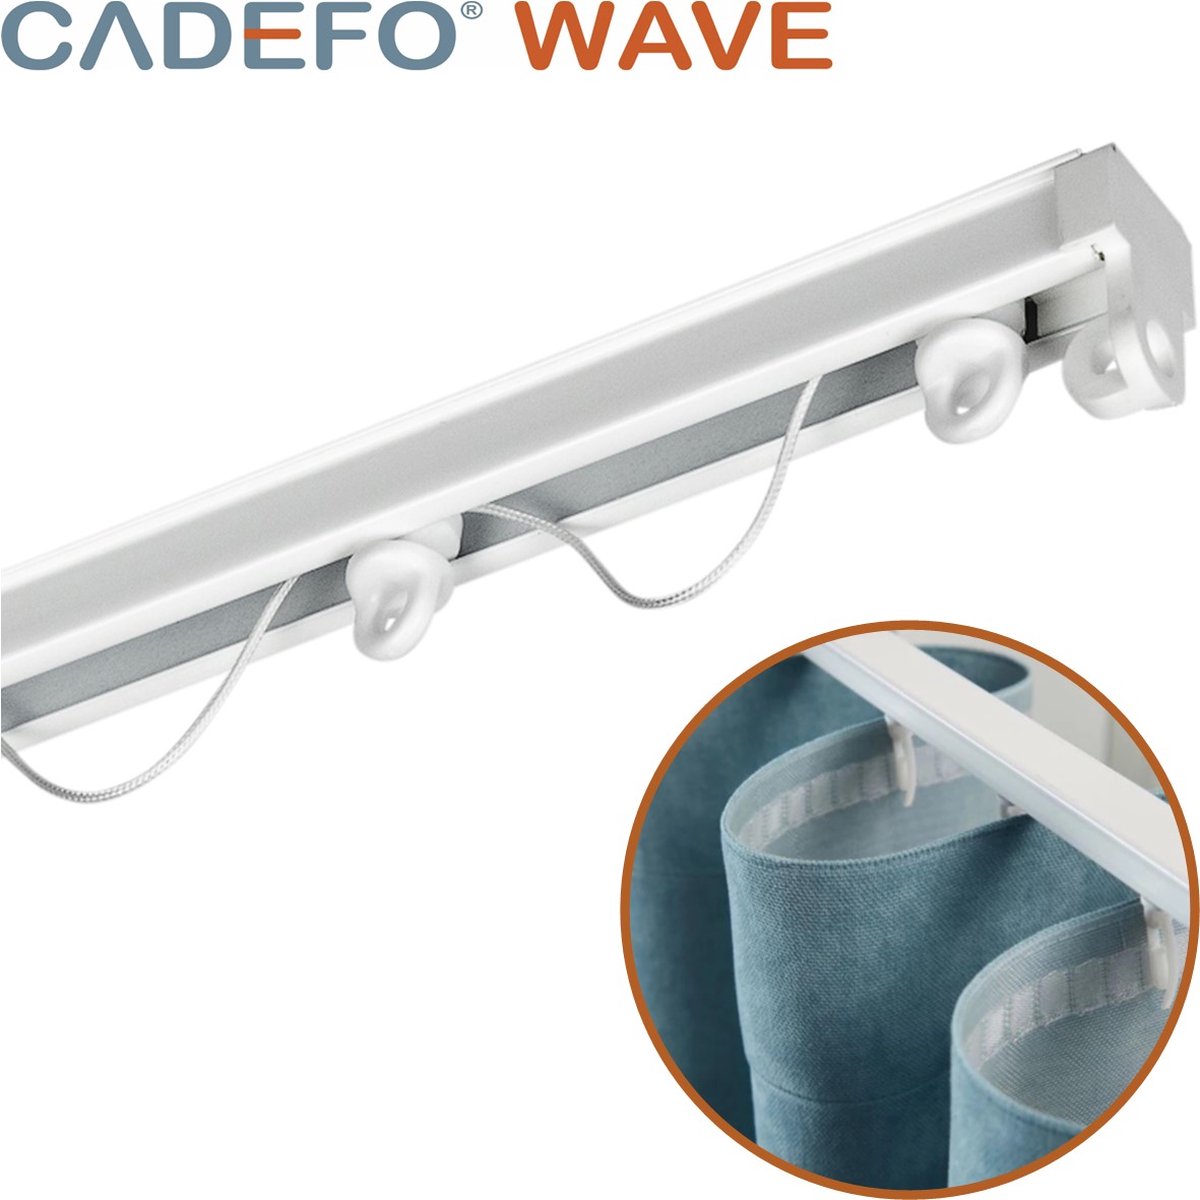 CADEFO WAVE (401 - 450 cm) Gordijnrails - Compleet op maat! - UIT 1 STUK - Leverbaar tot 6 meter - Plafondbevestiging - Lengte 407 cm